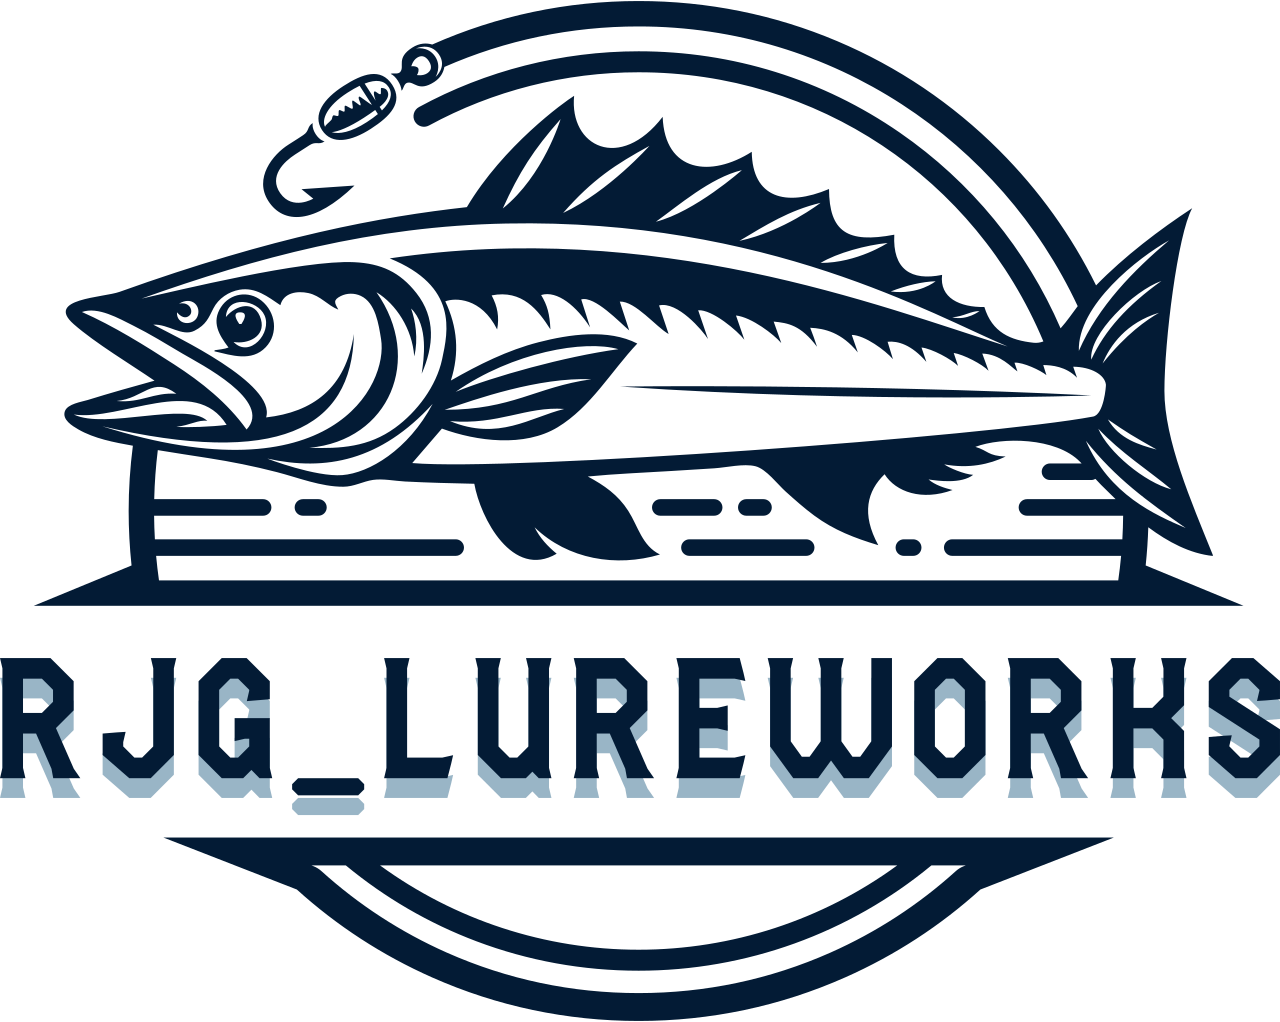 Rjg_lureworks's logo